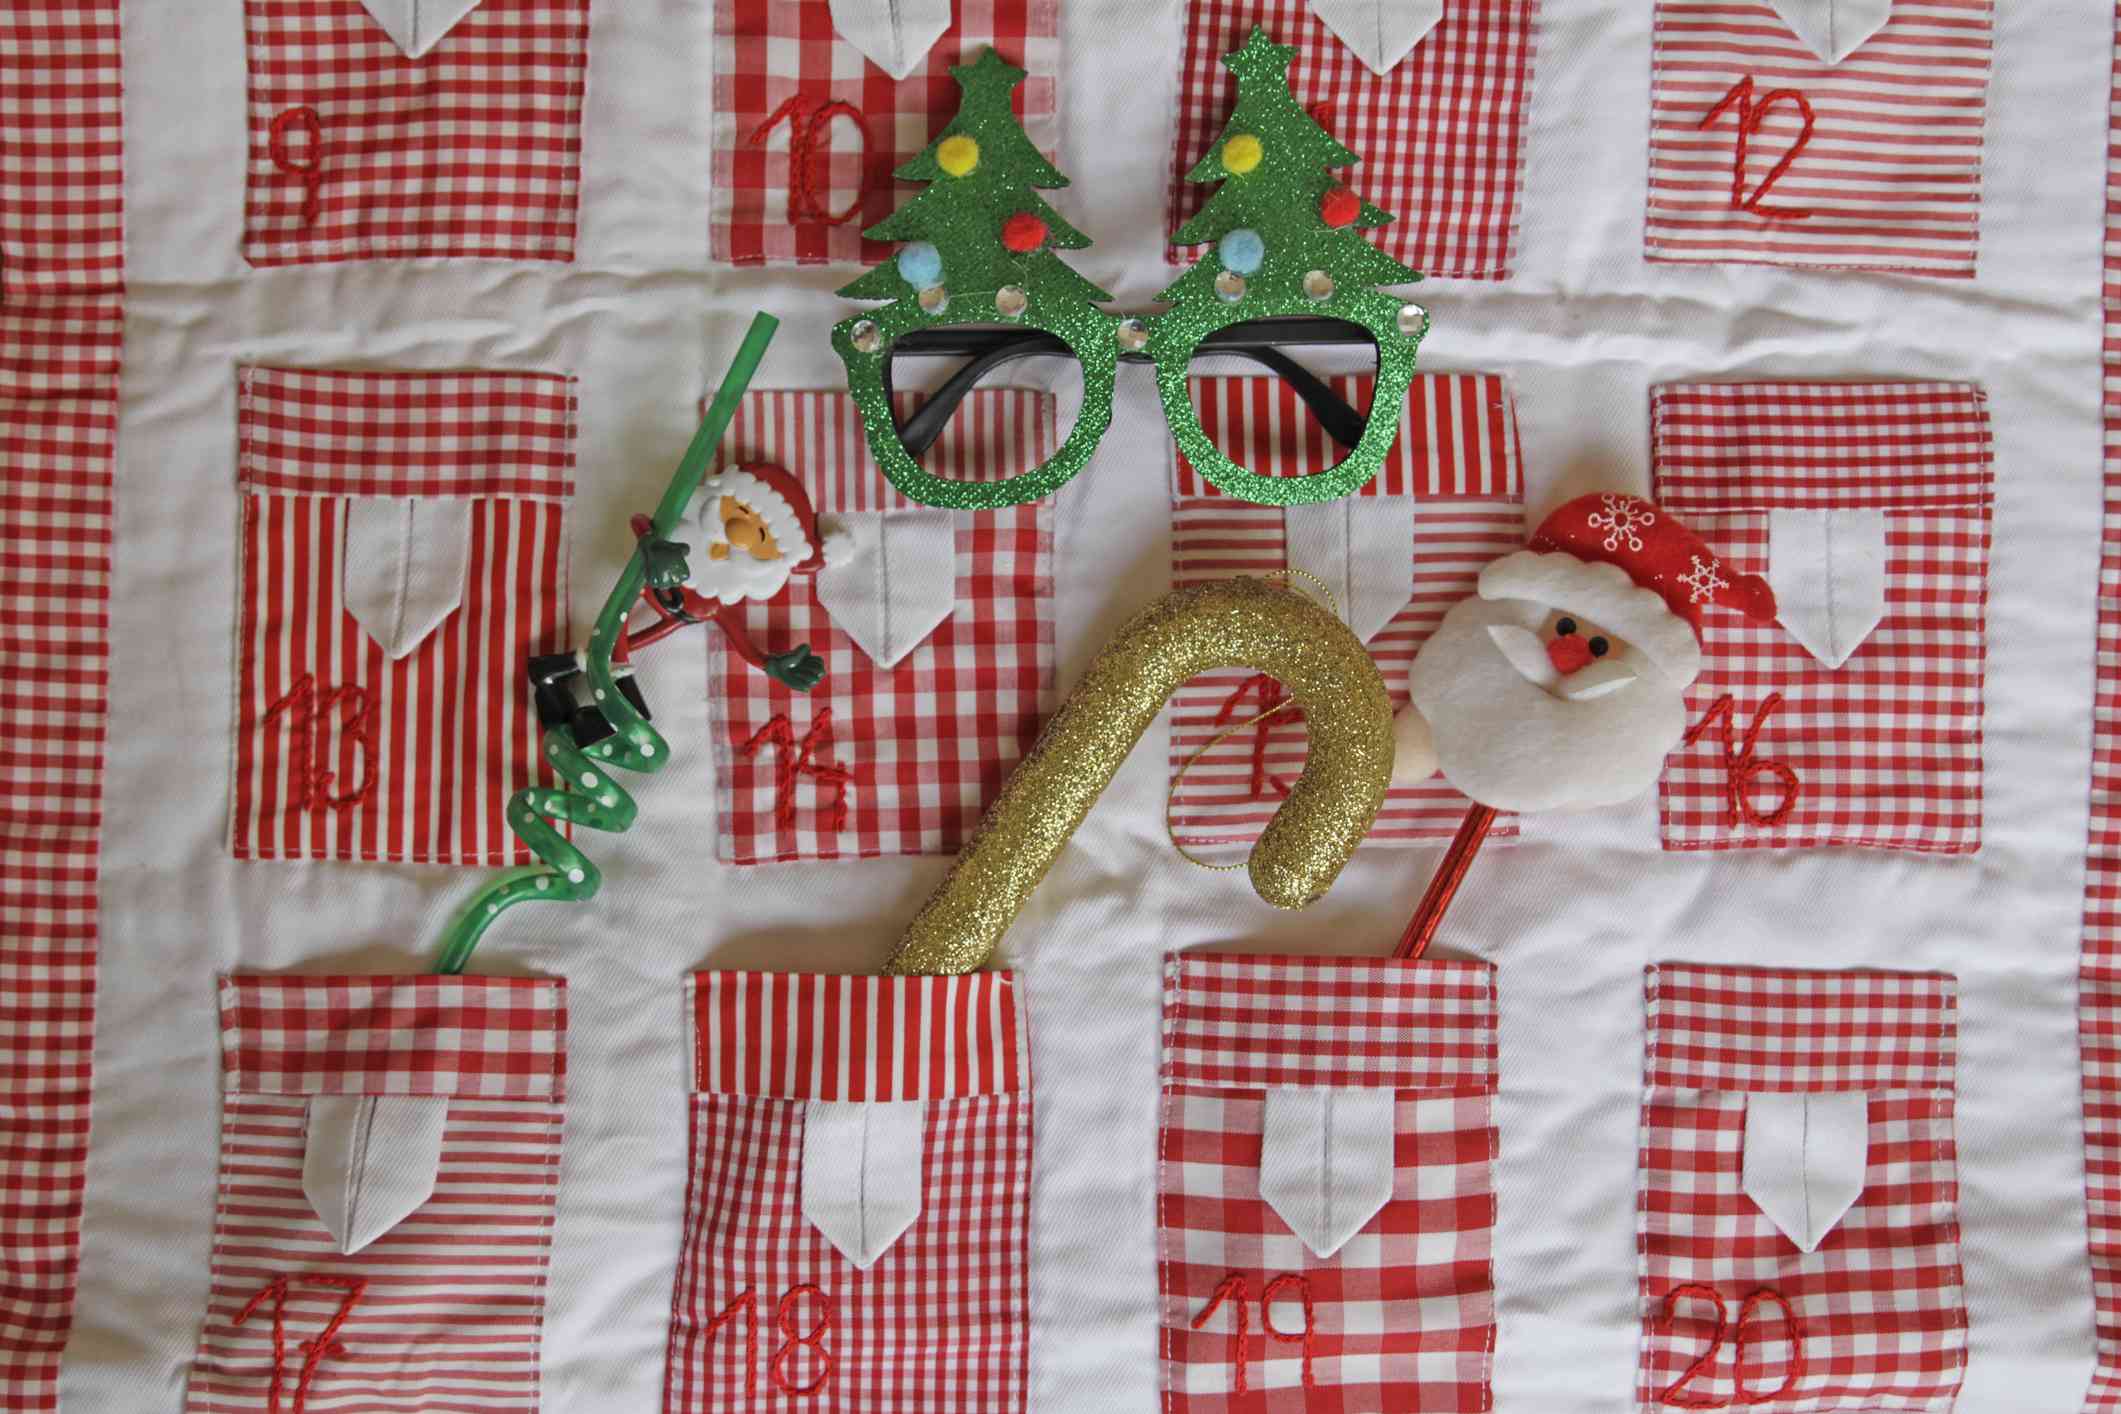 Calendario de Adviento acolchado hecho a mano con Papá Noel